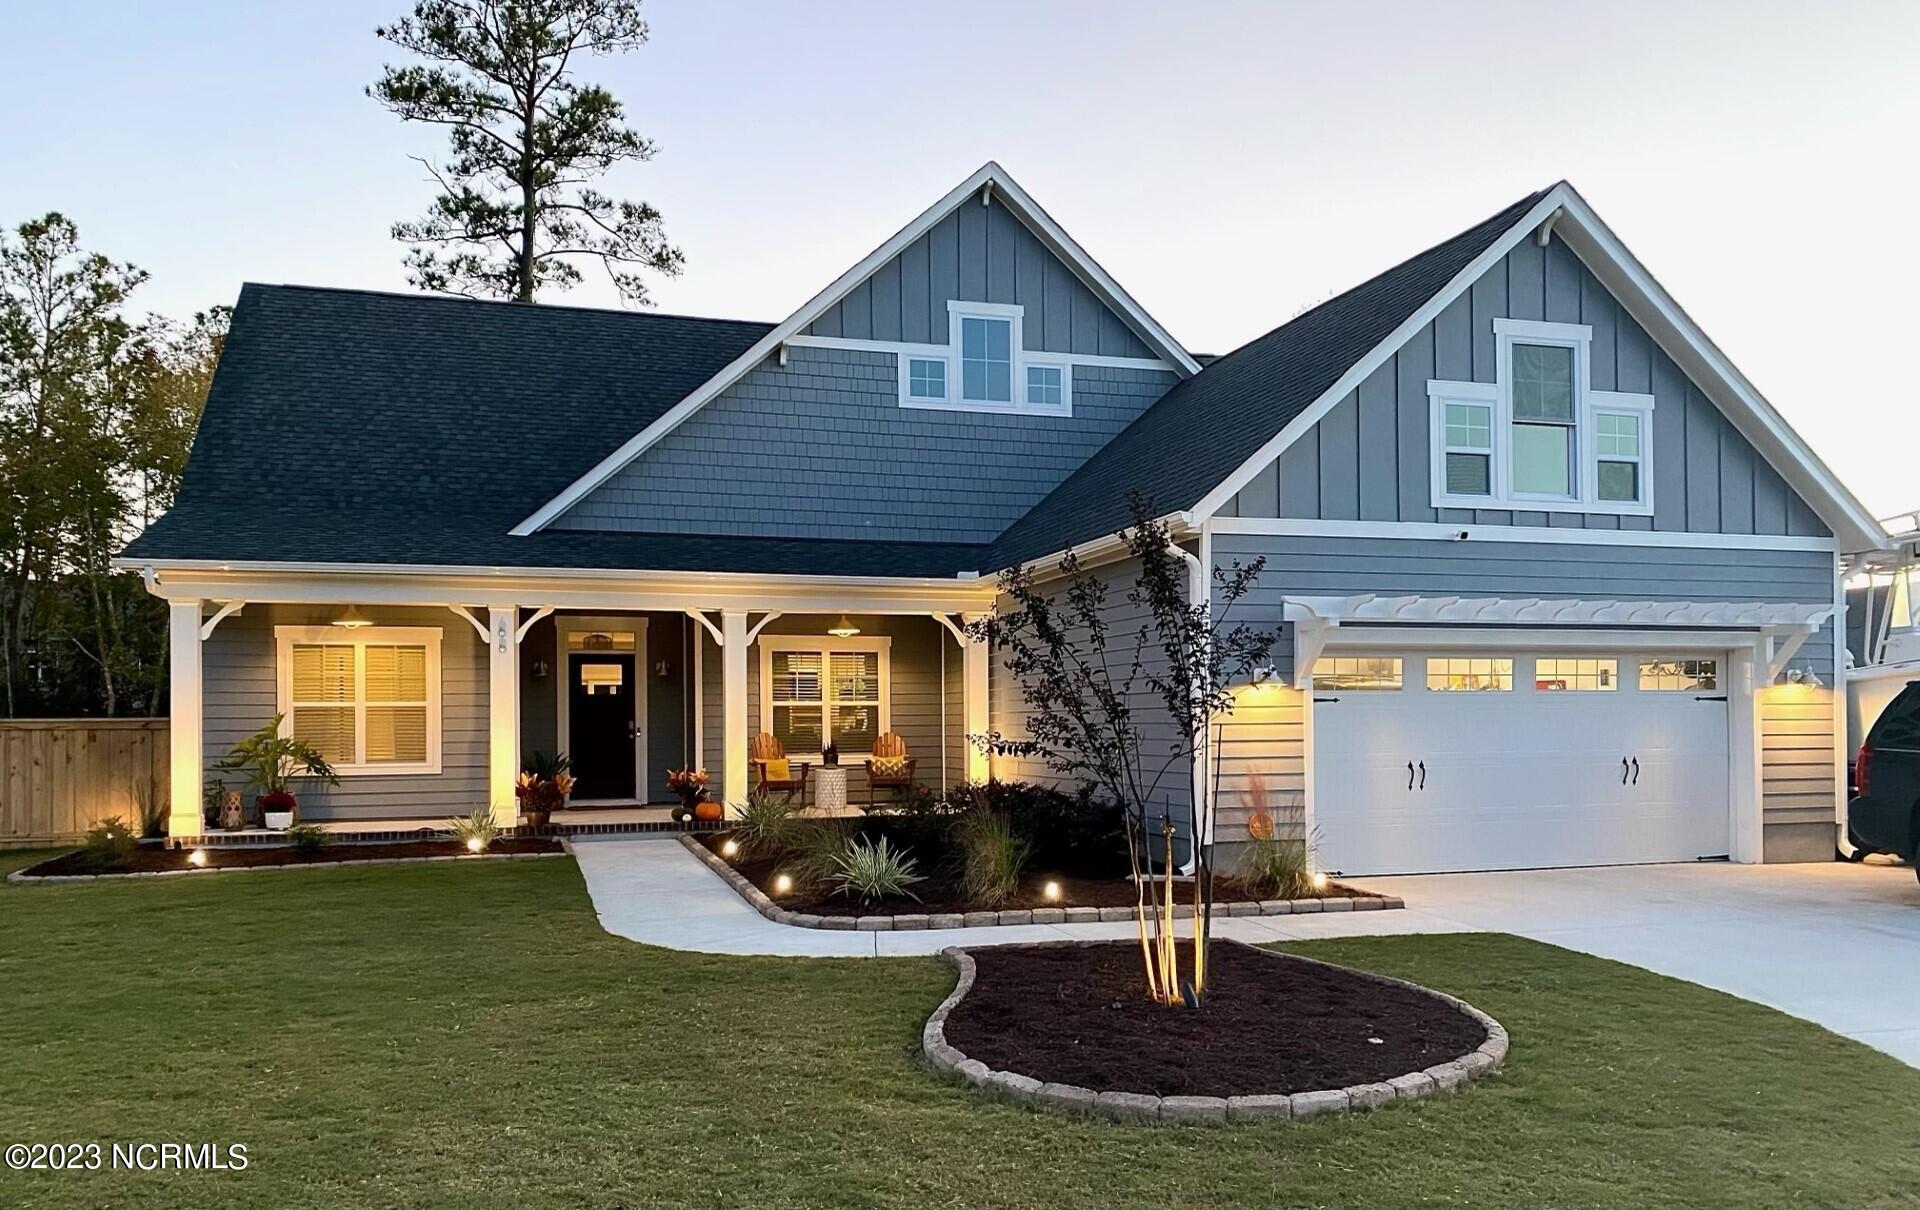 Carolina Creek Real Estate Listings Main Image